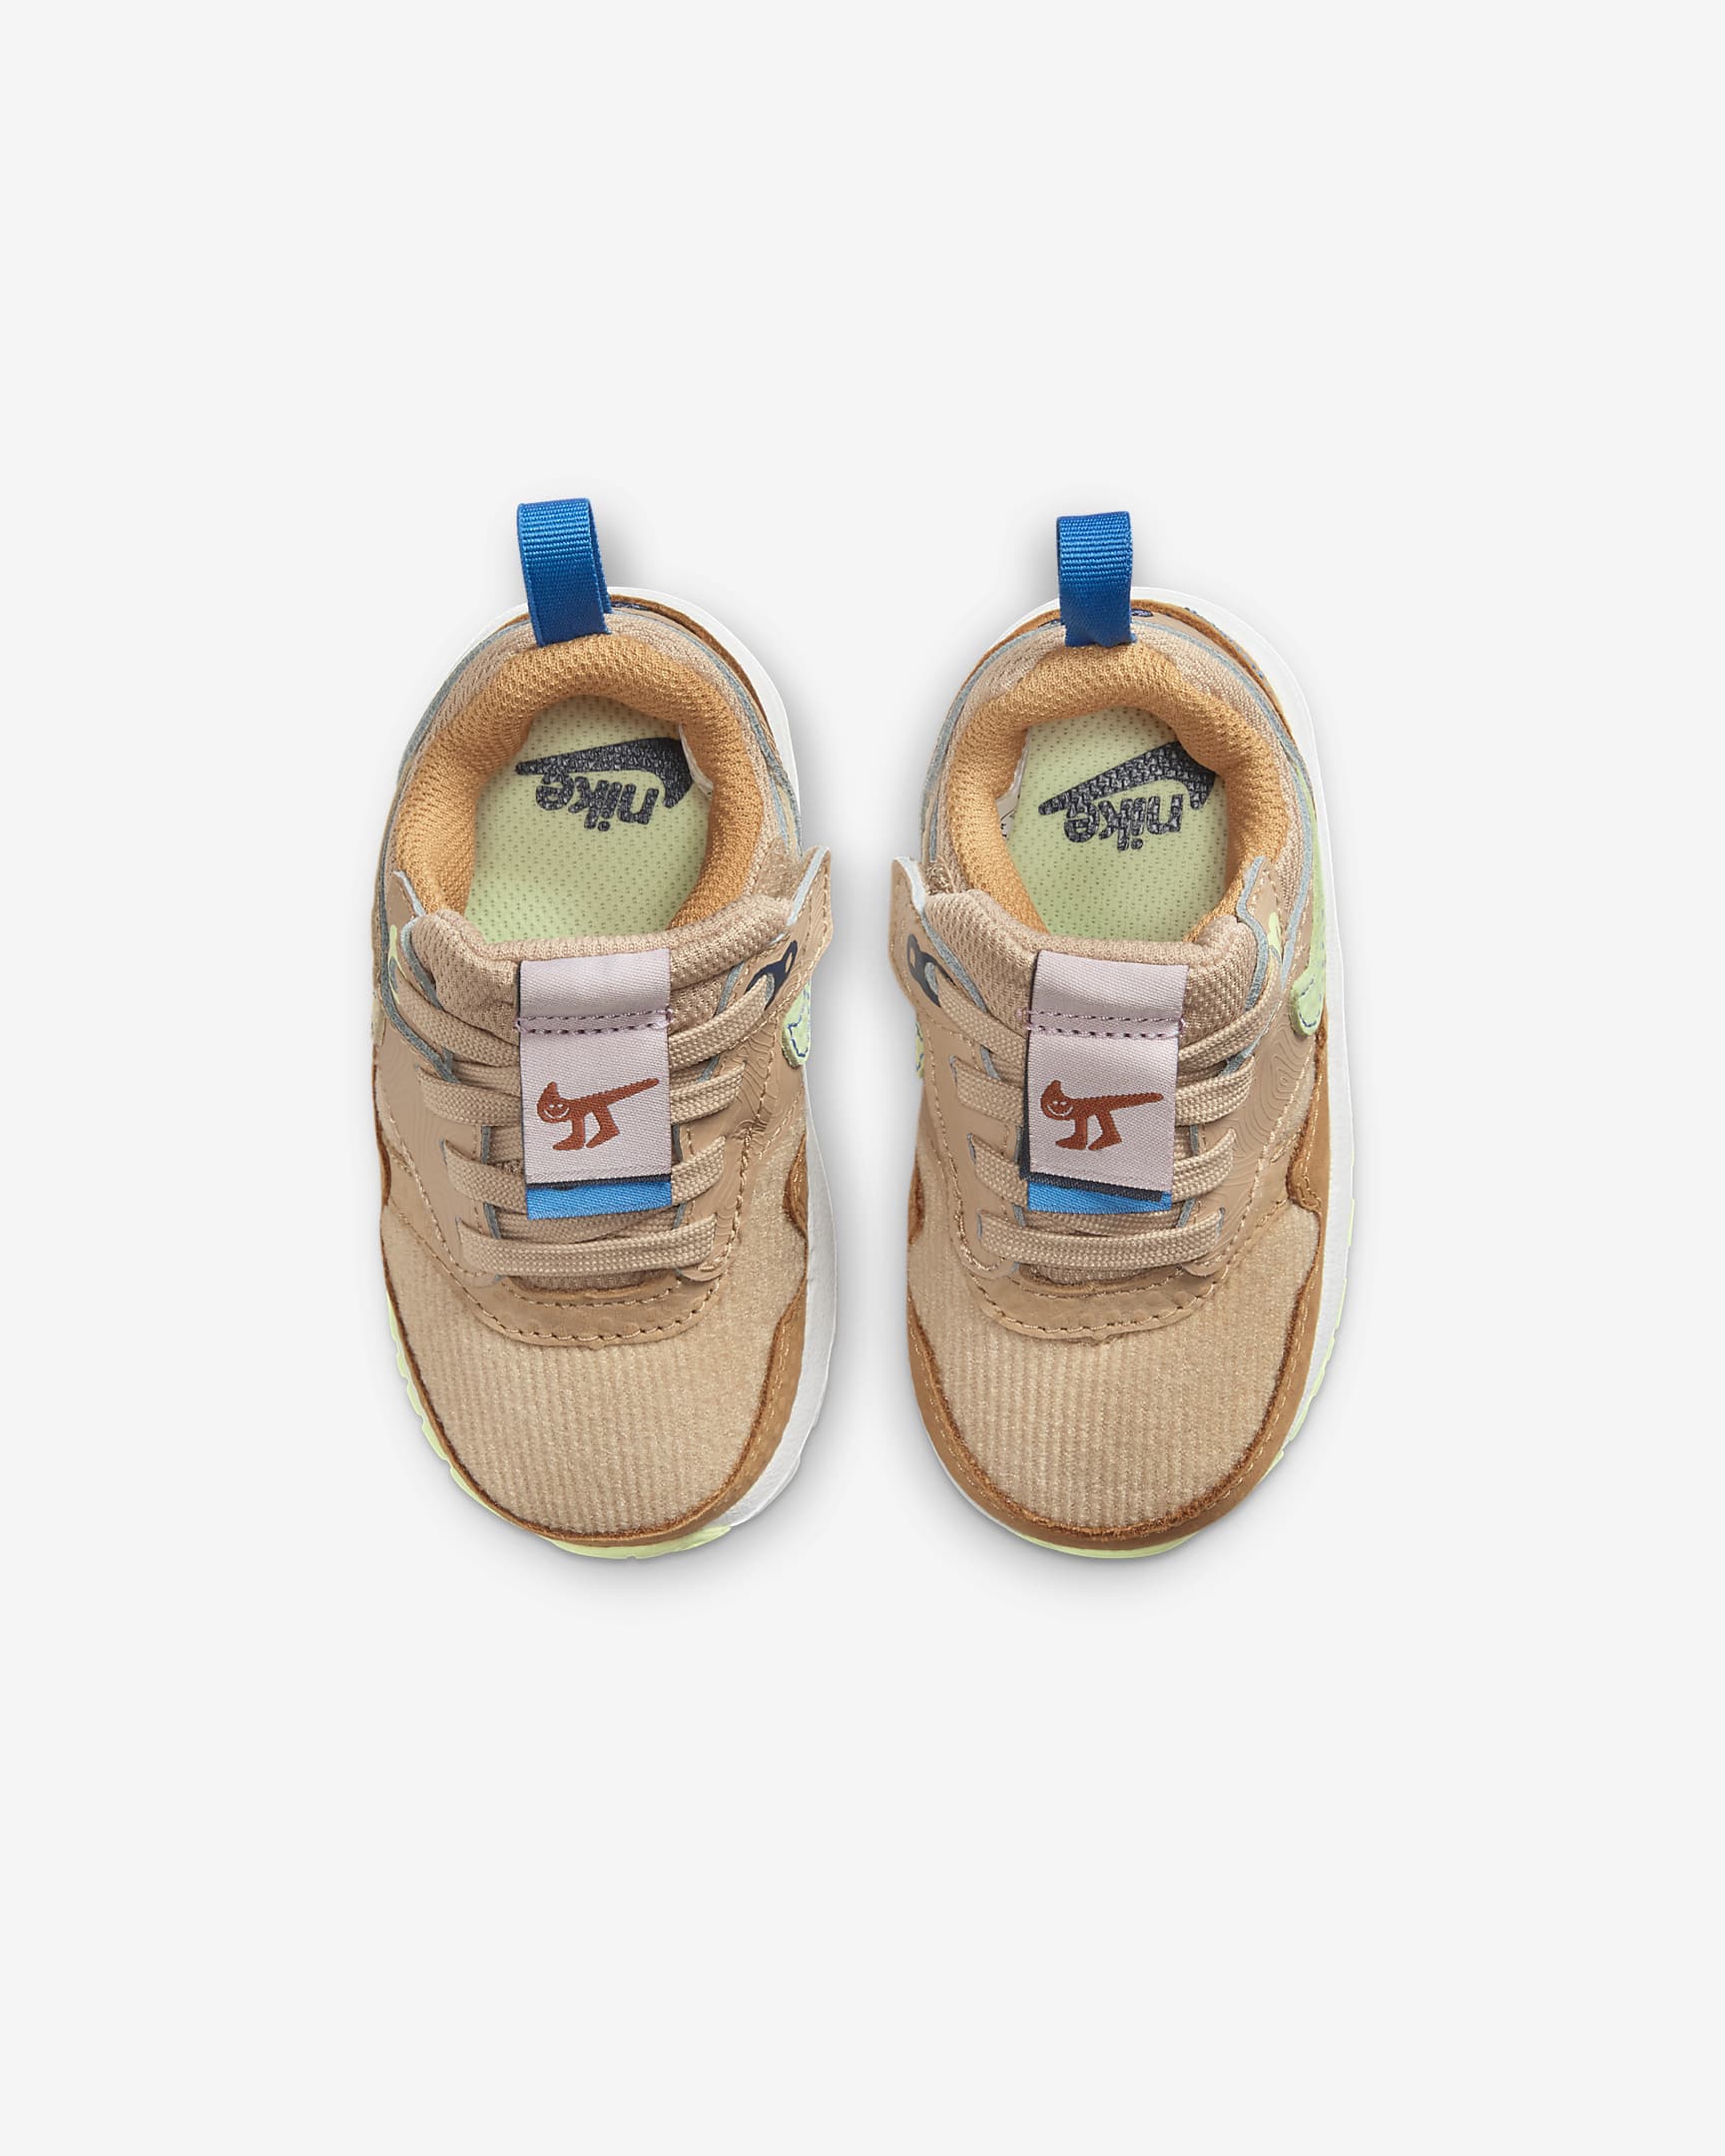 Nike Air Max 1 SE EasyOn Schuh für Babys und Kleinkinder - Hemp/Flax/Coconut Milk